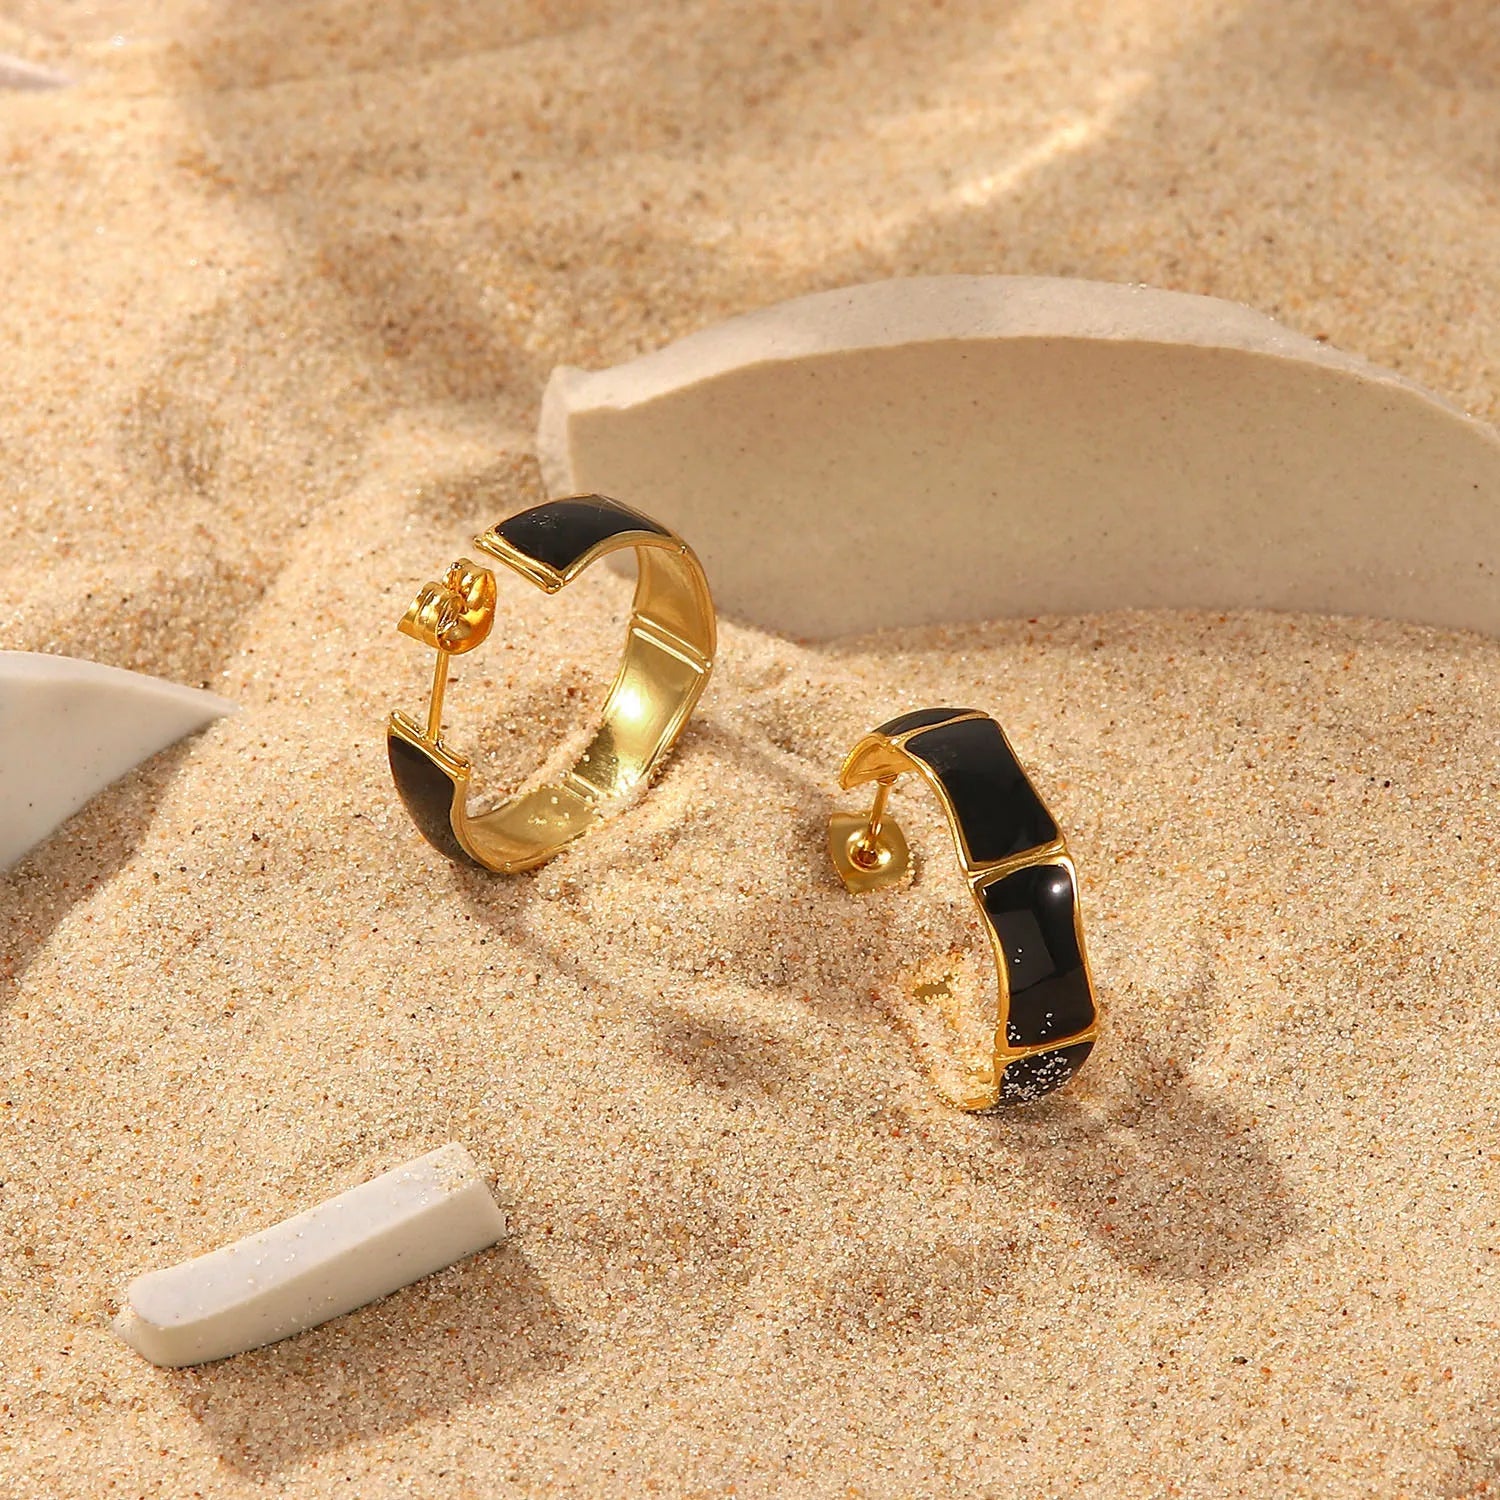 Black Enamel Earrings 18K Gold Plated for Women on sand